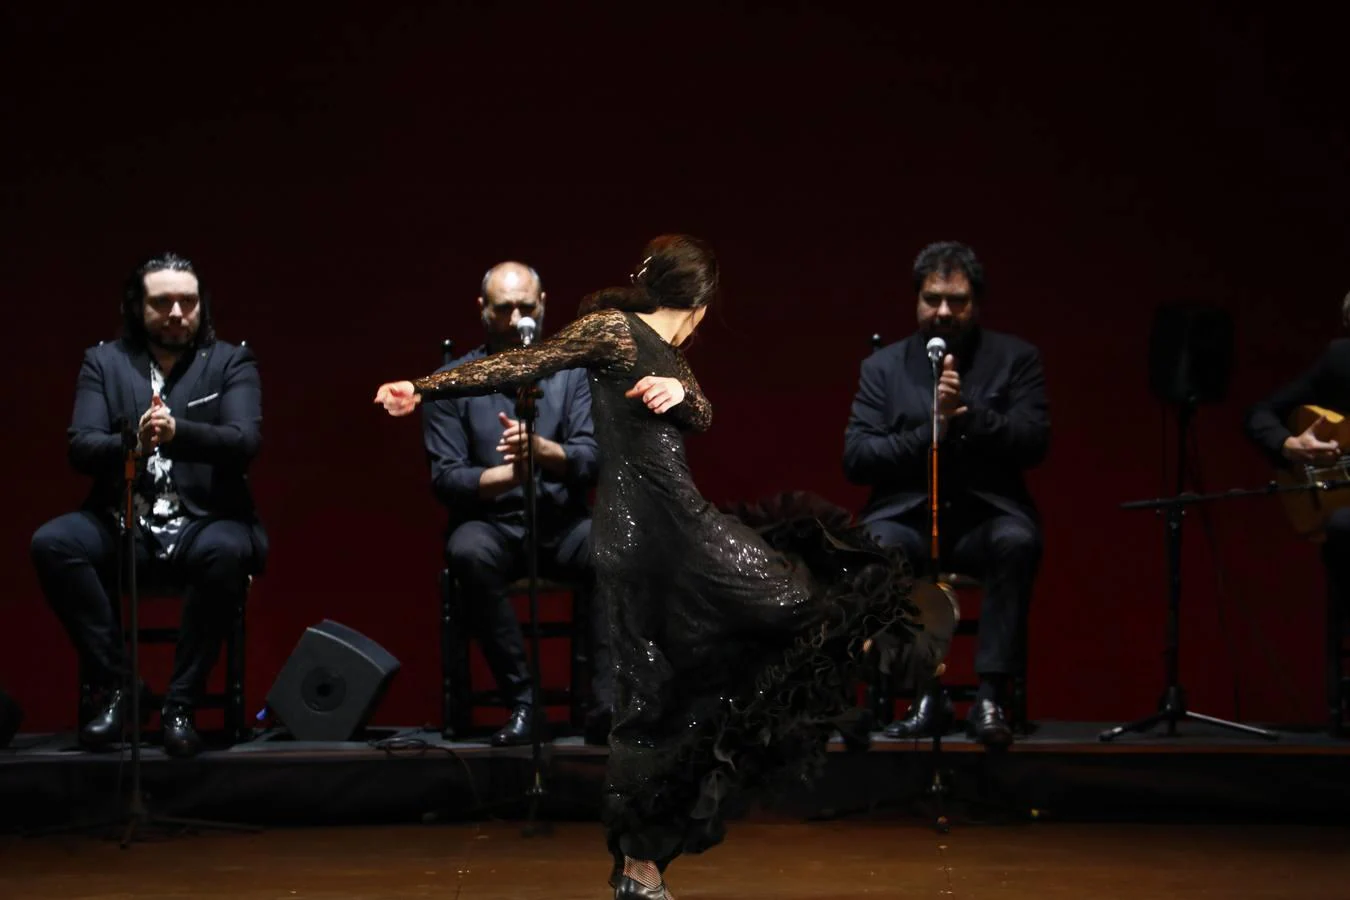 Los finalistas del Concurso Nacional de Arte Flamenco de Córdoba, en imágenes